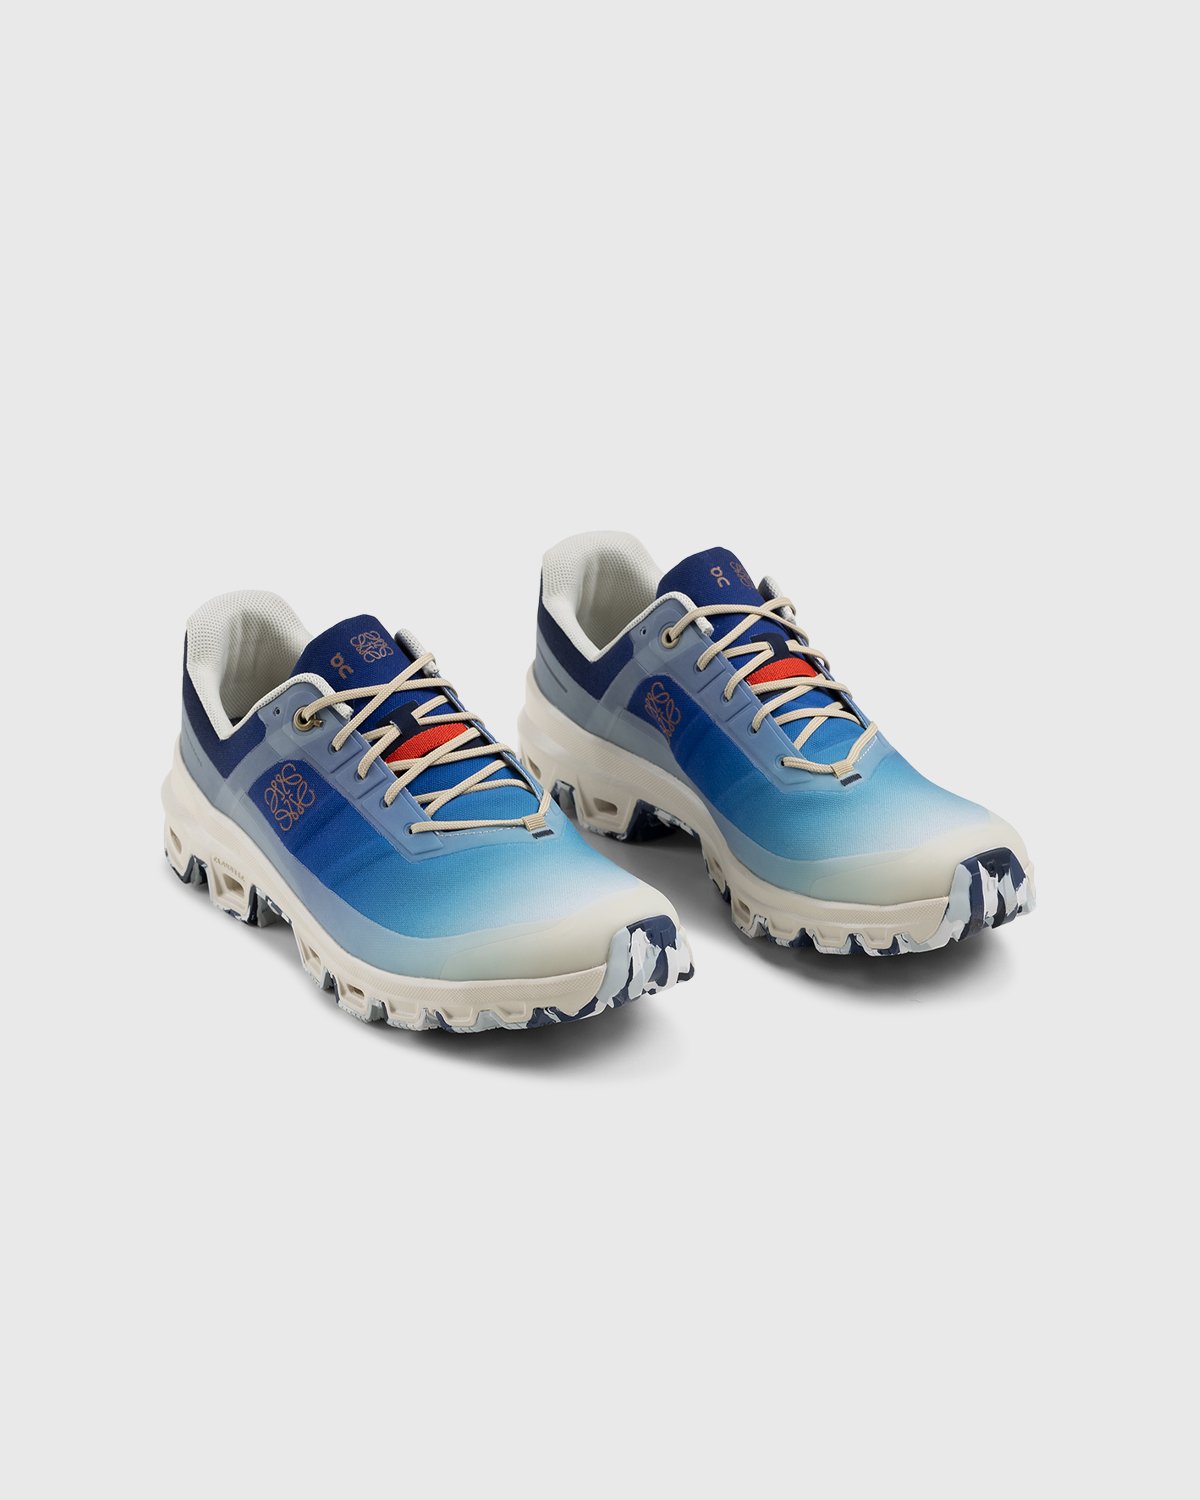 Loewe x On - Men's Cloudventure Gradient Blue - Footwear - Blue - Image 3